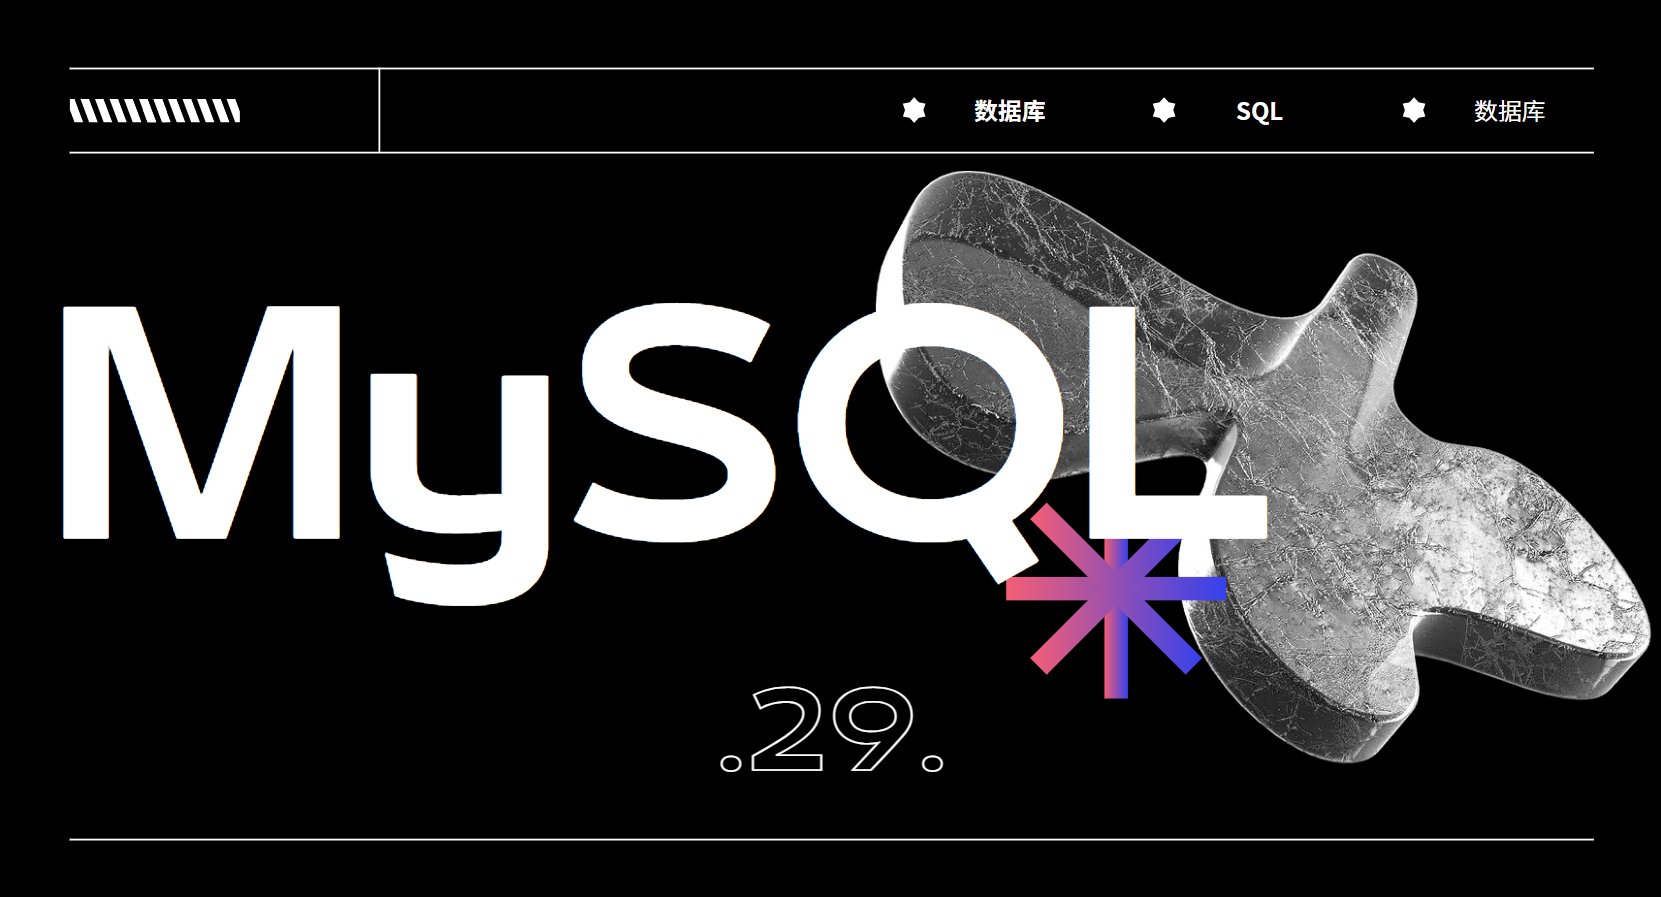 ⑩⑥ 【MySQL】详解 触发器TRIGGER，协助 确保数据的完整性，日志记录，数据校验等操作。